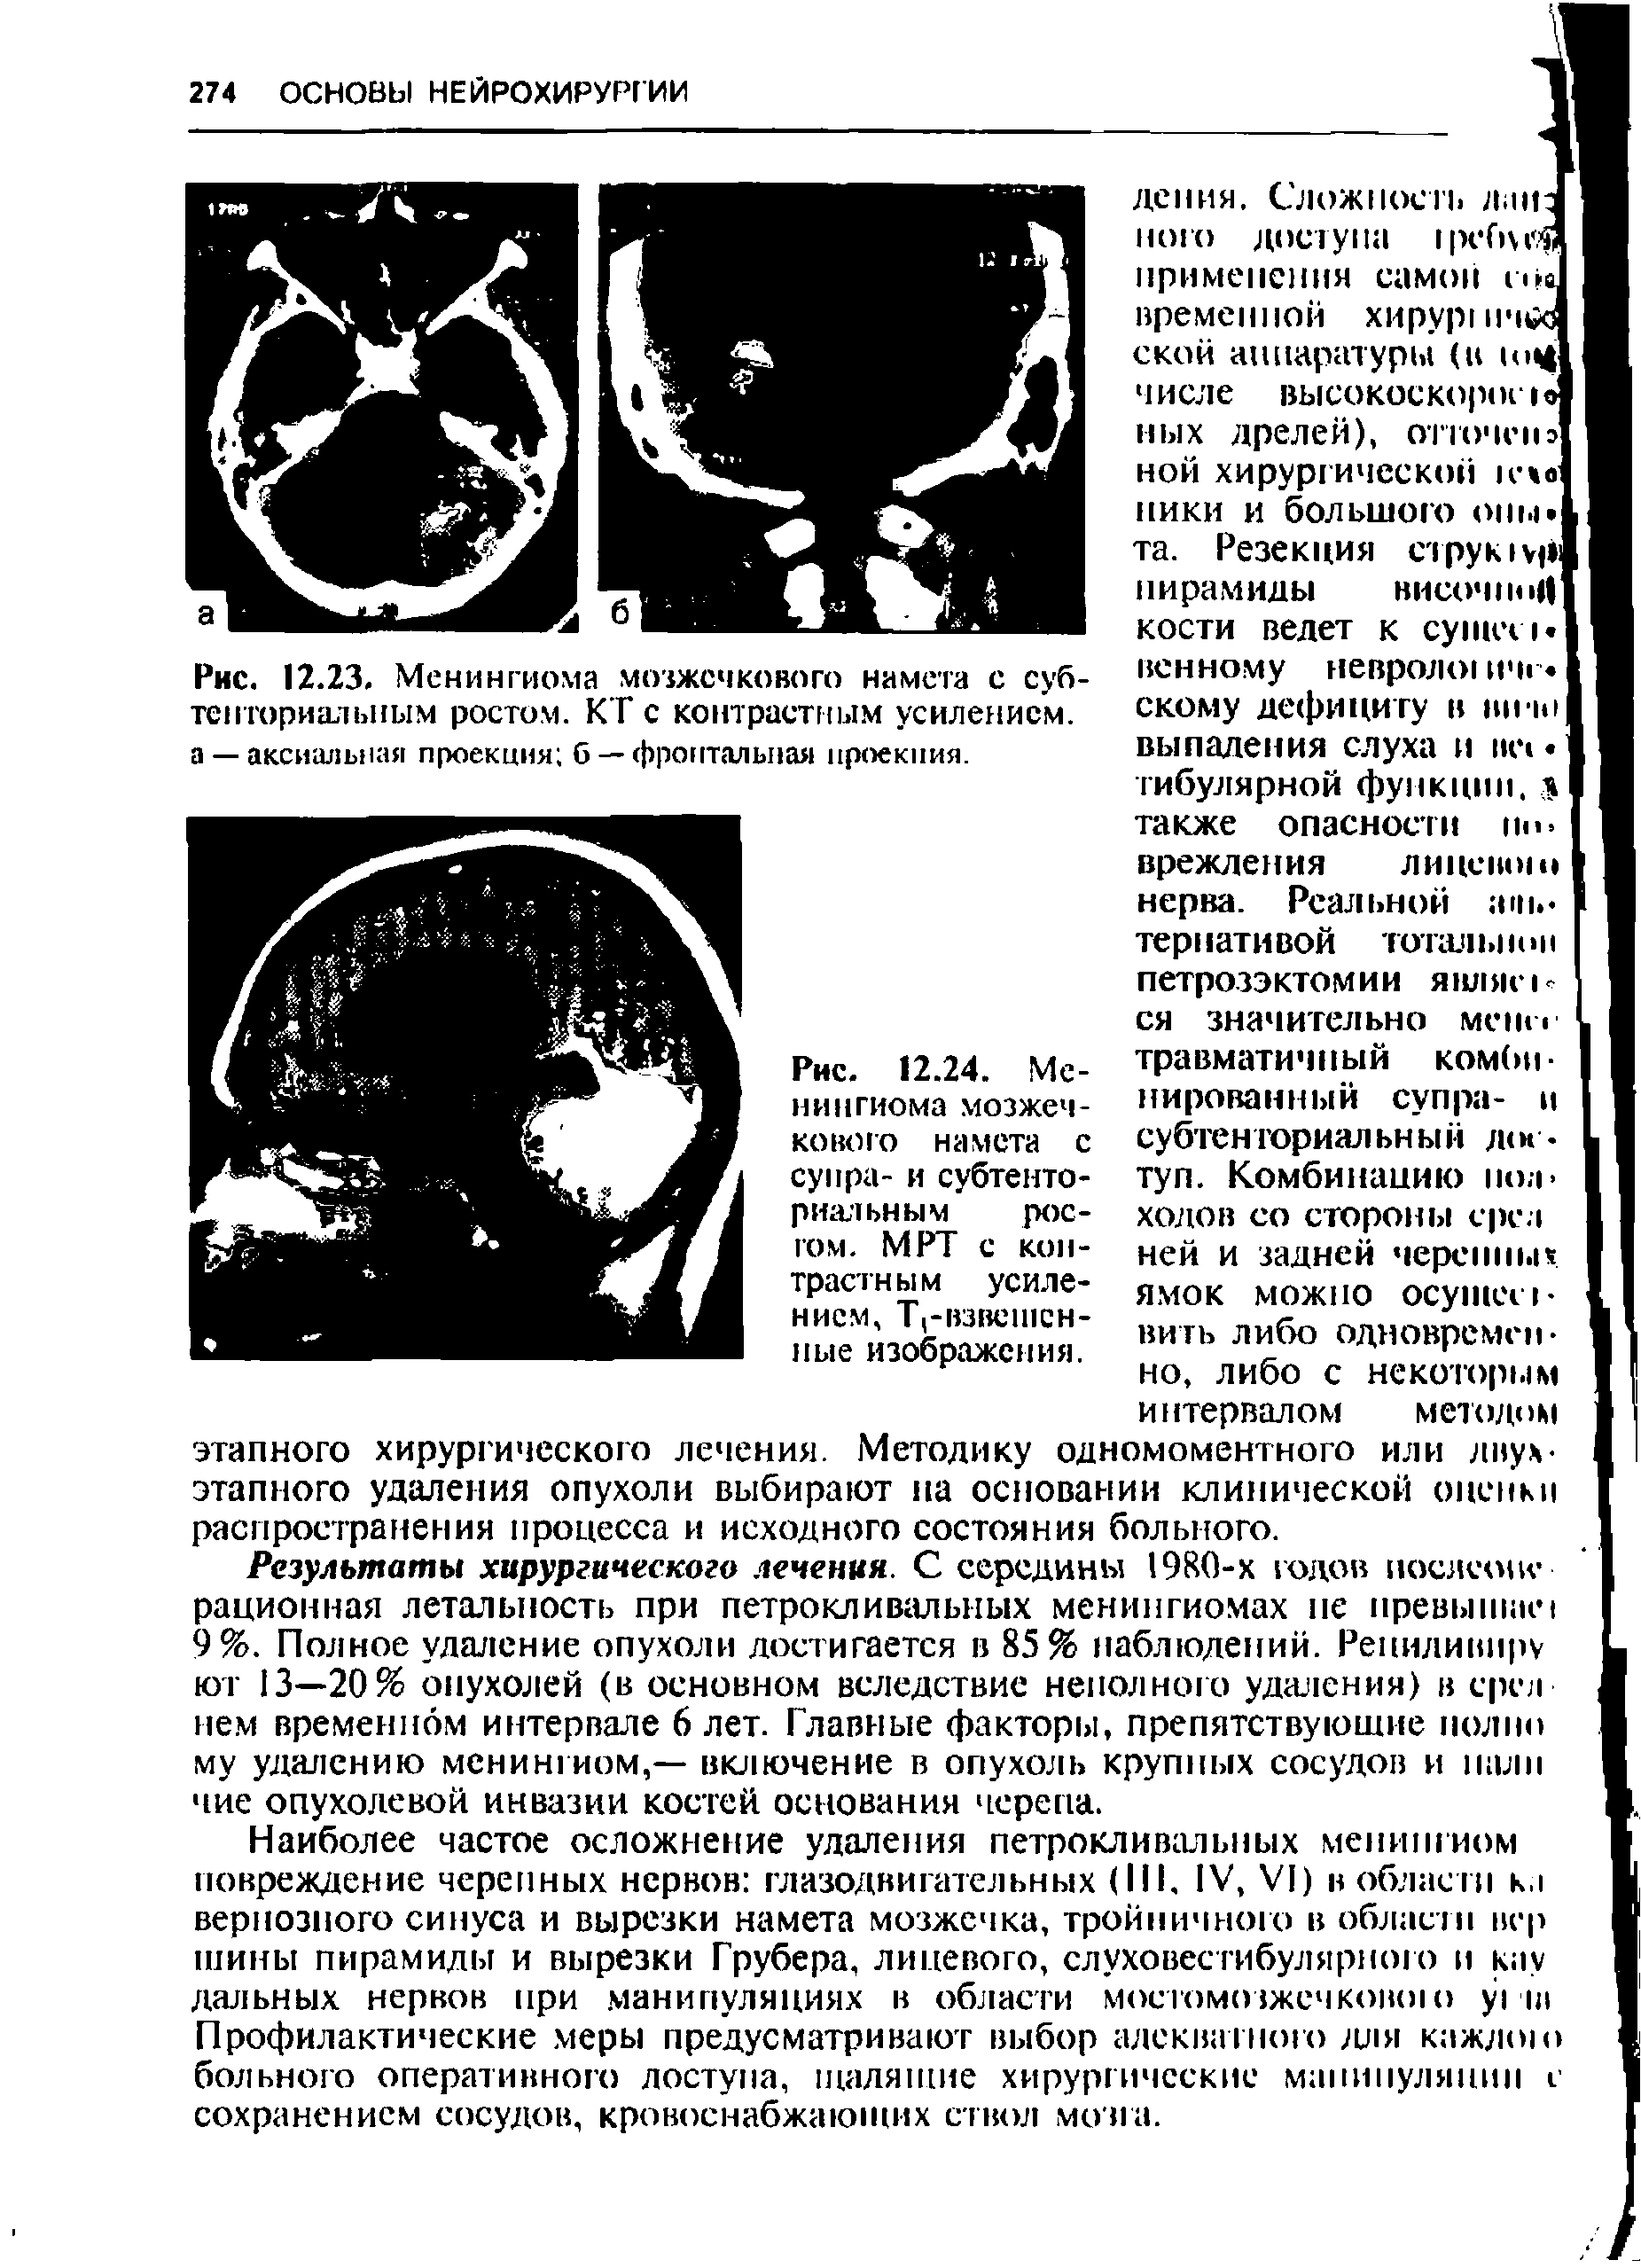 Рис. 12.24. Менингиома мозжечкового намета с супра- и субтенториальным ростом. МРТ с контрастным усилением, Т -взвешсн-ные изображения.